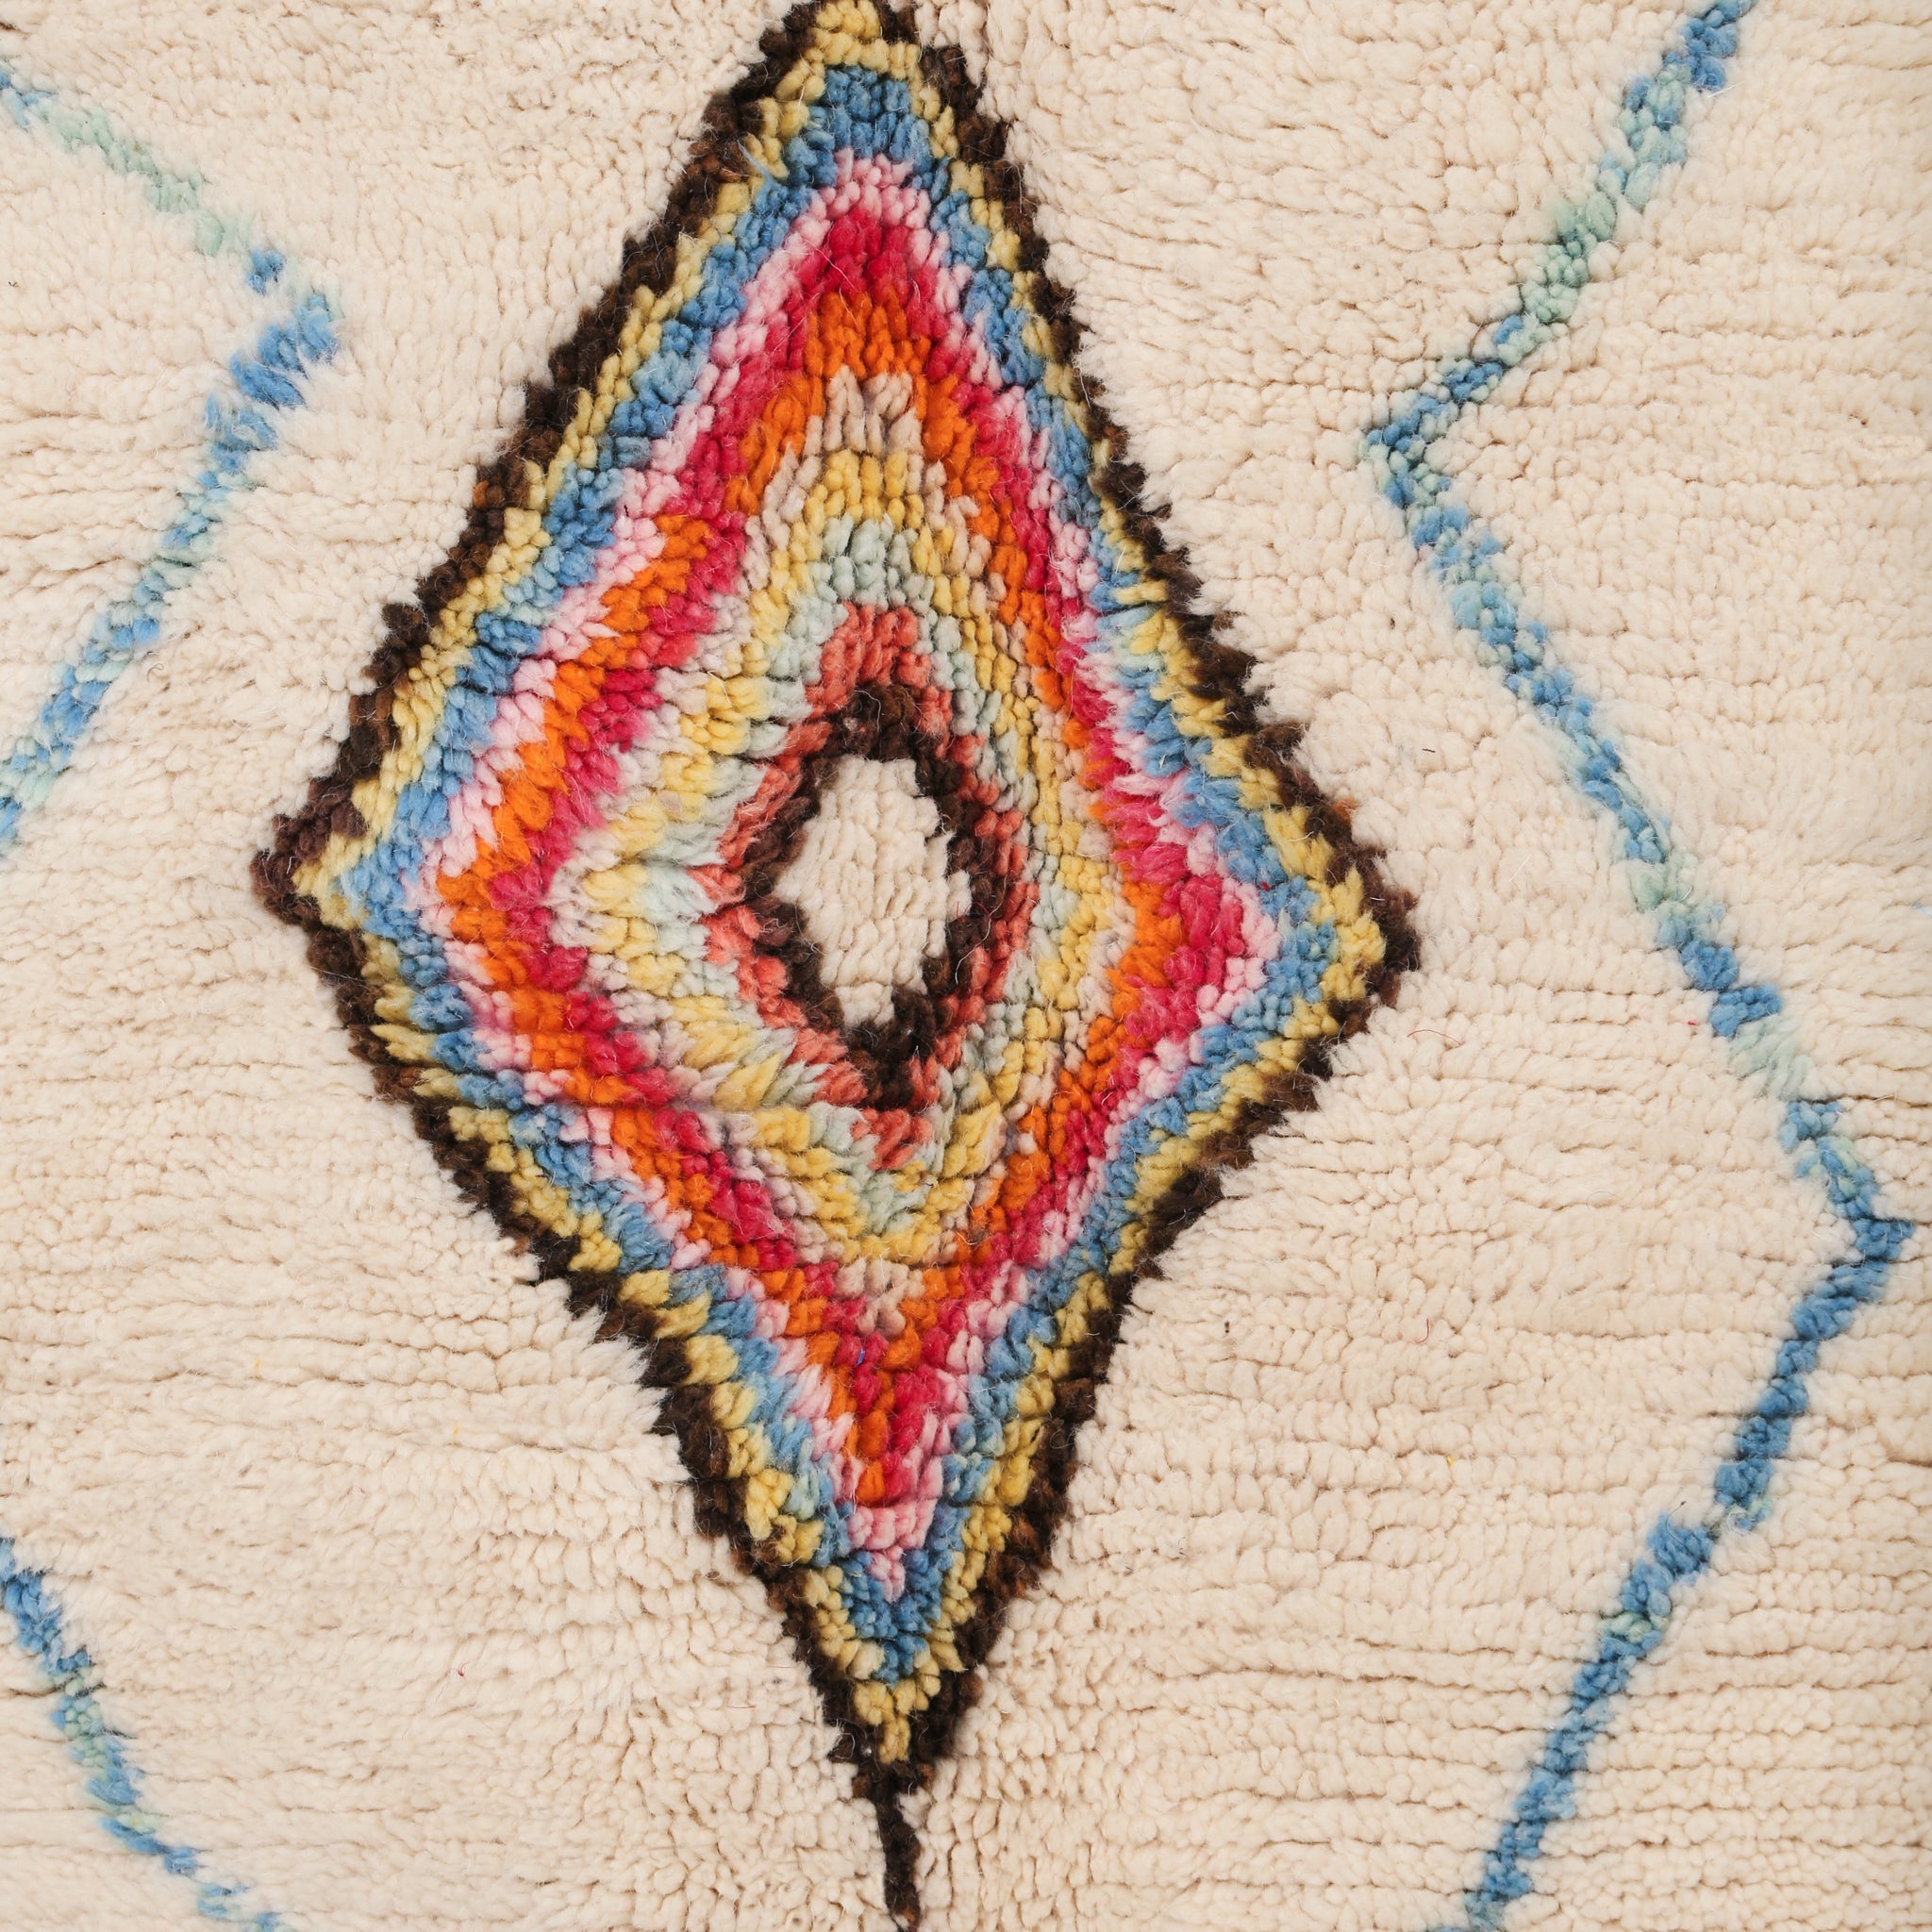 zoom su uno dei rombi del tappeto formato da tanti rombi colorati uno all'interno dell'altro